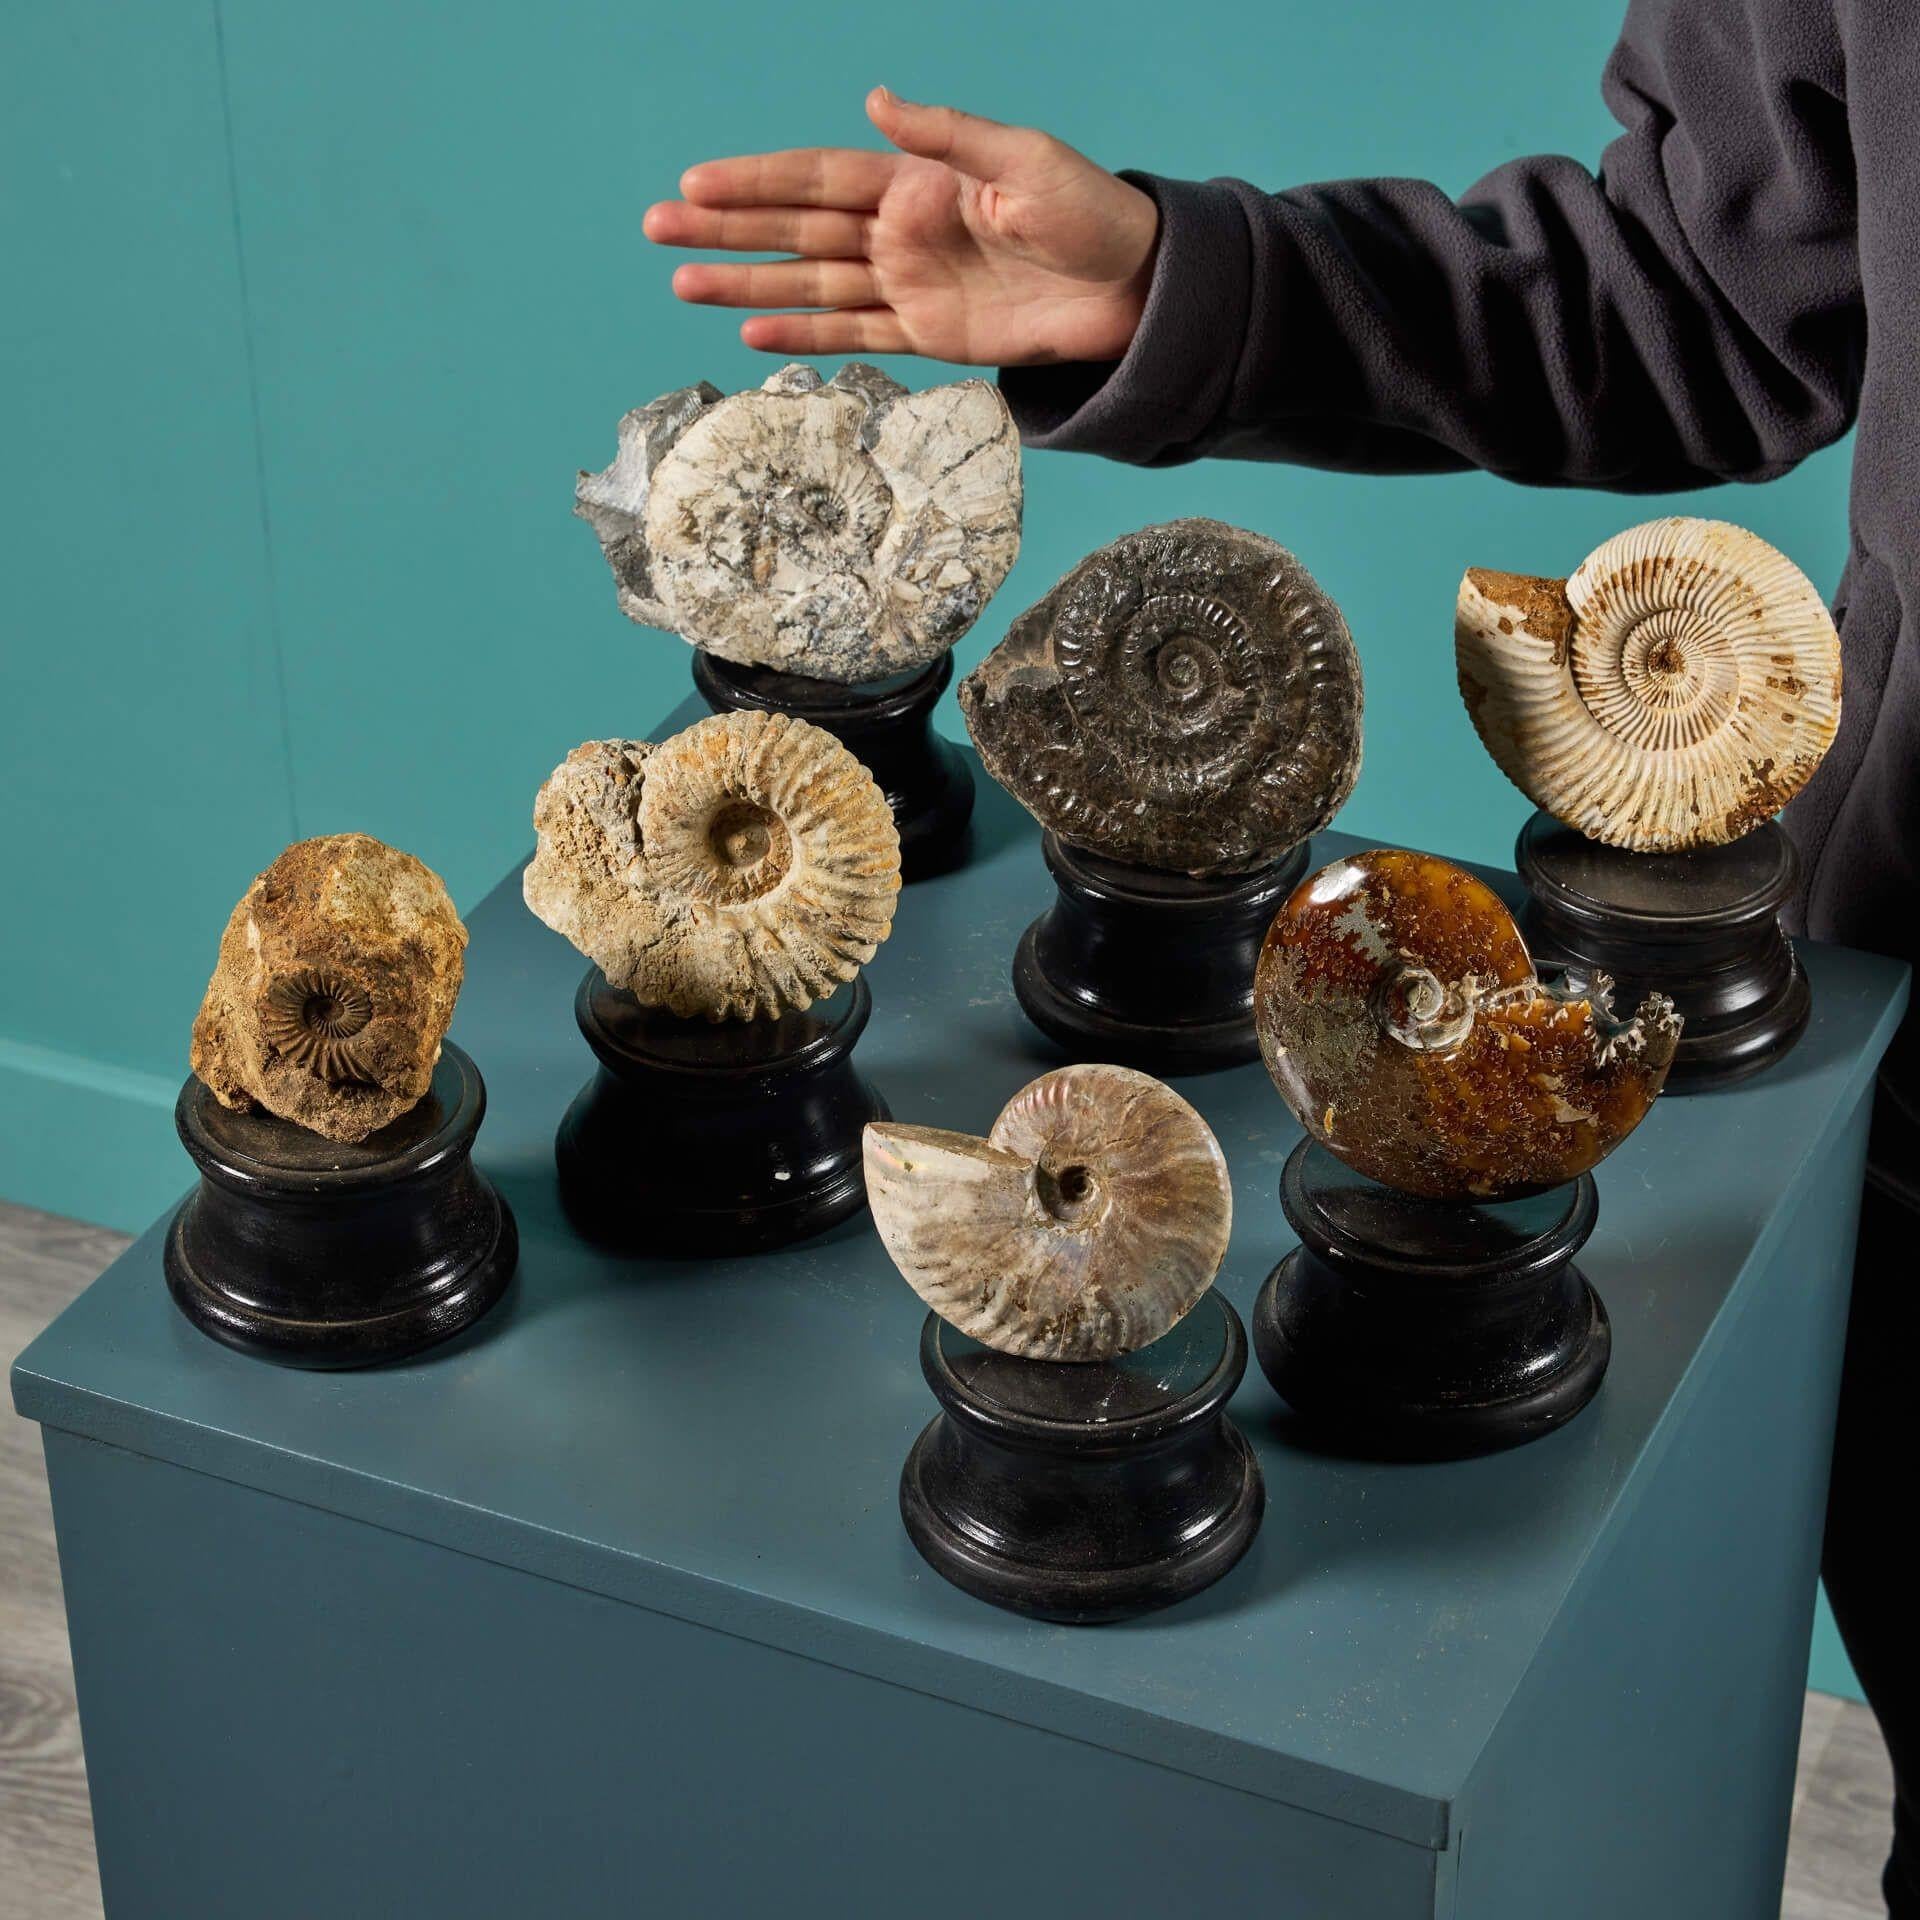 Un superbe ensemble de 7 fossiles d'ammonites préhistoriques présentés sur nos petites bases tournées en plâtre peint. Ce groupe présente des ammonites de tons, de textures et de finitions tactiles variés. Parmi les pièces maîtresses de cette